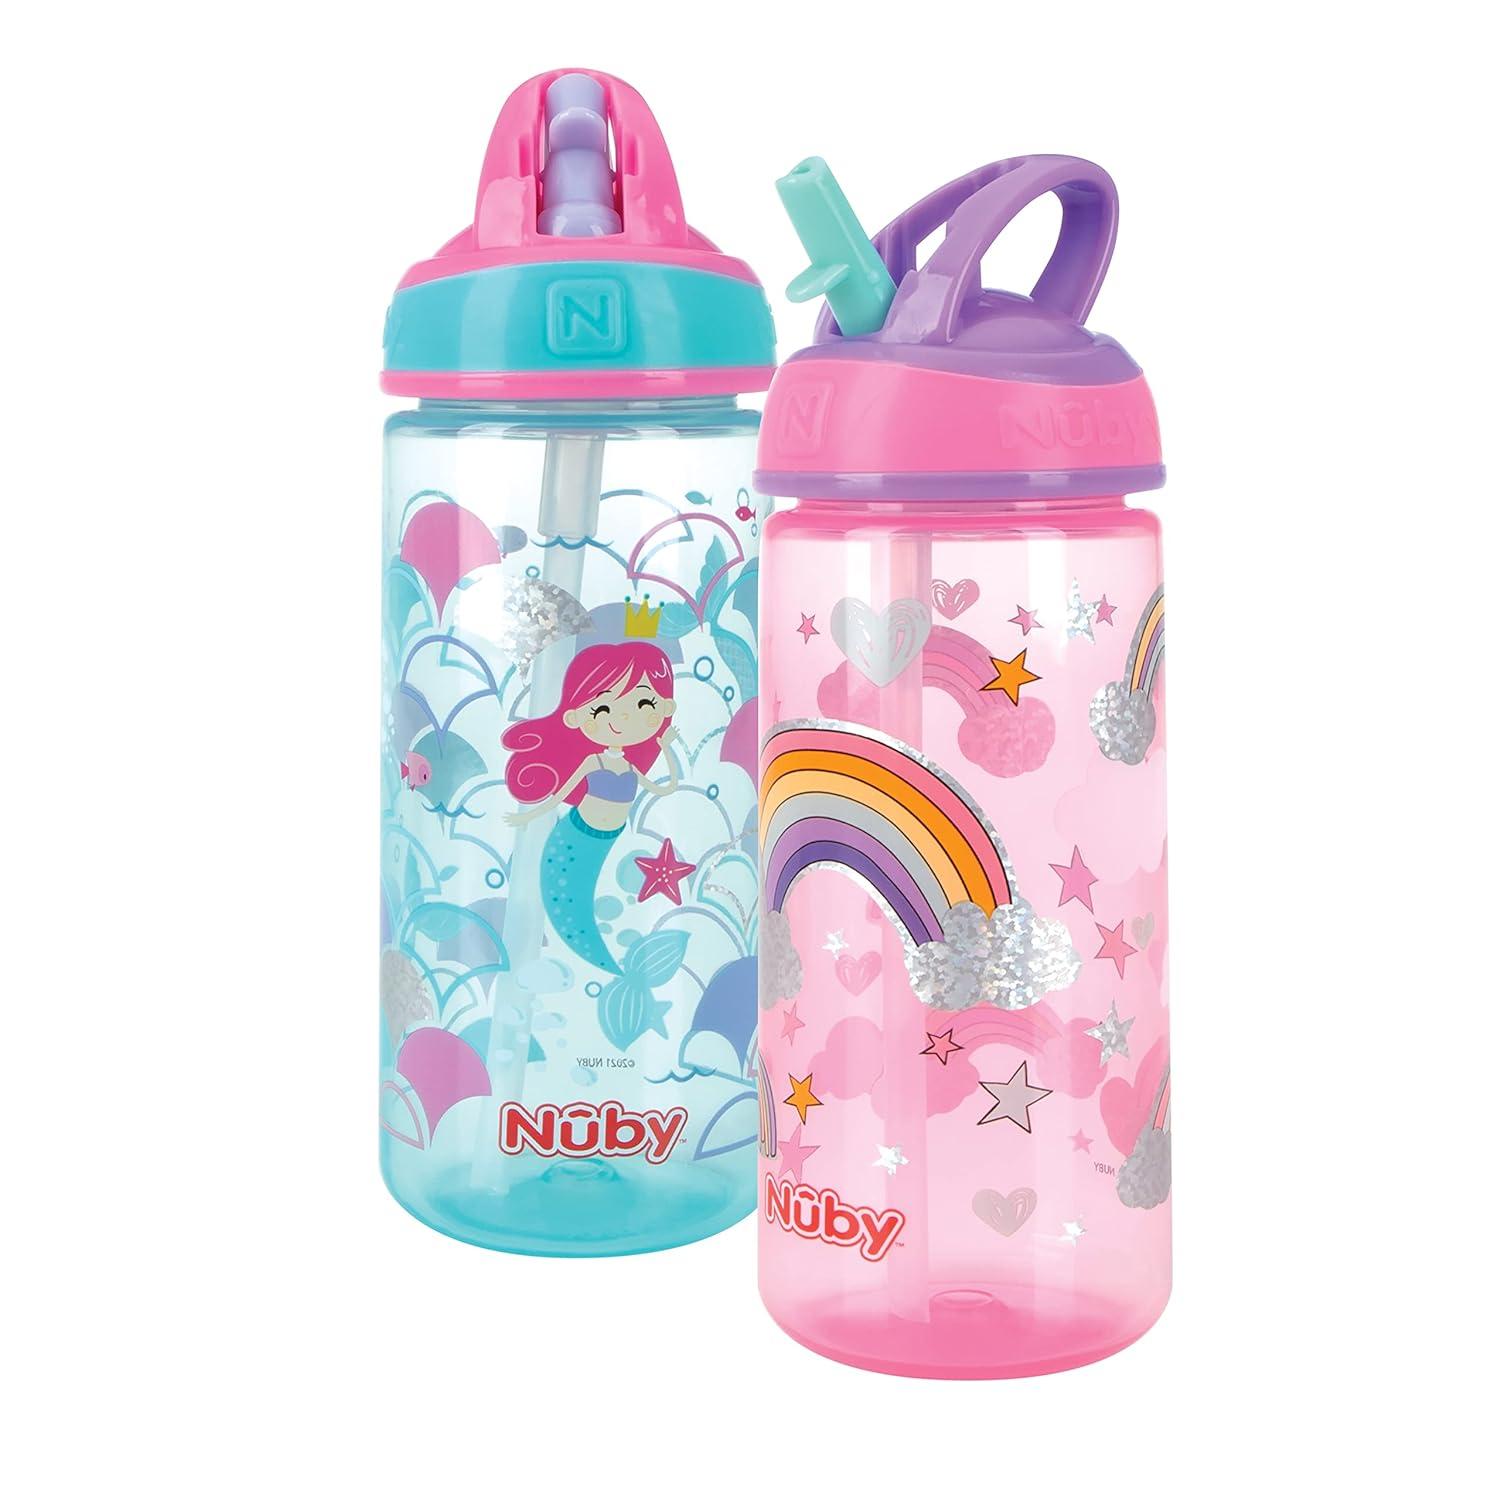 Super Flip Kids Water Bottle Rainbows 2 Pack, Kids Water Bottle